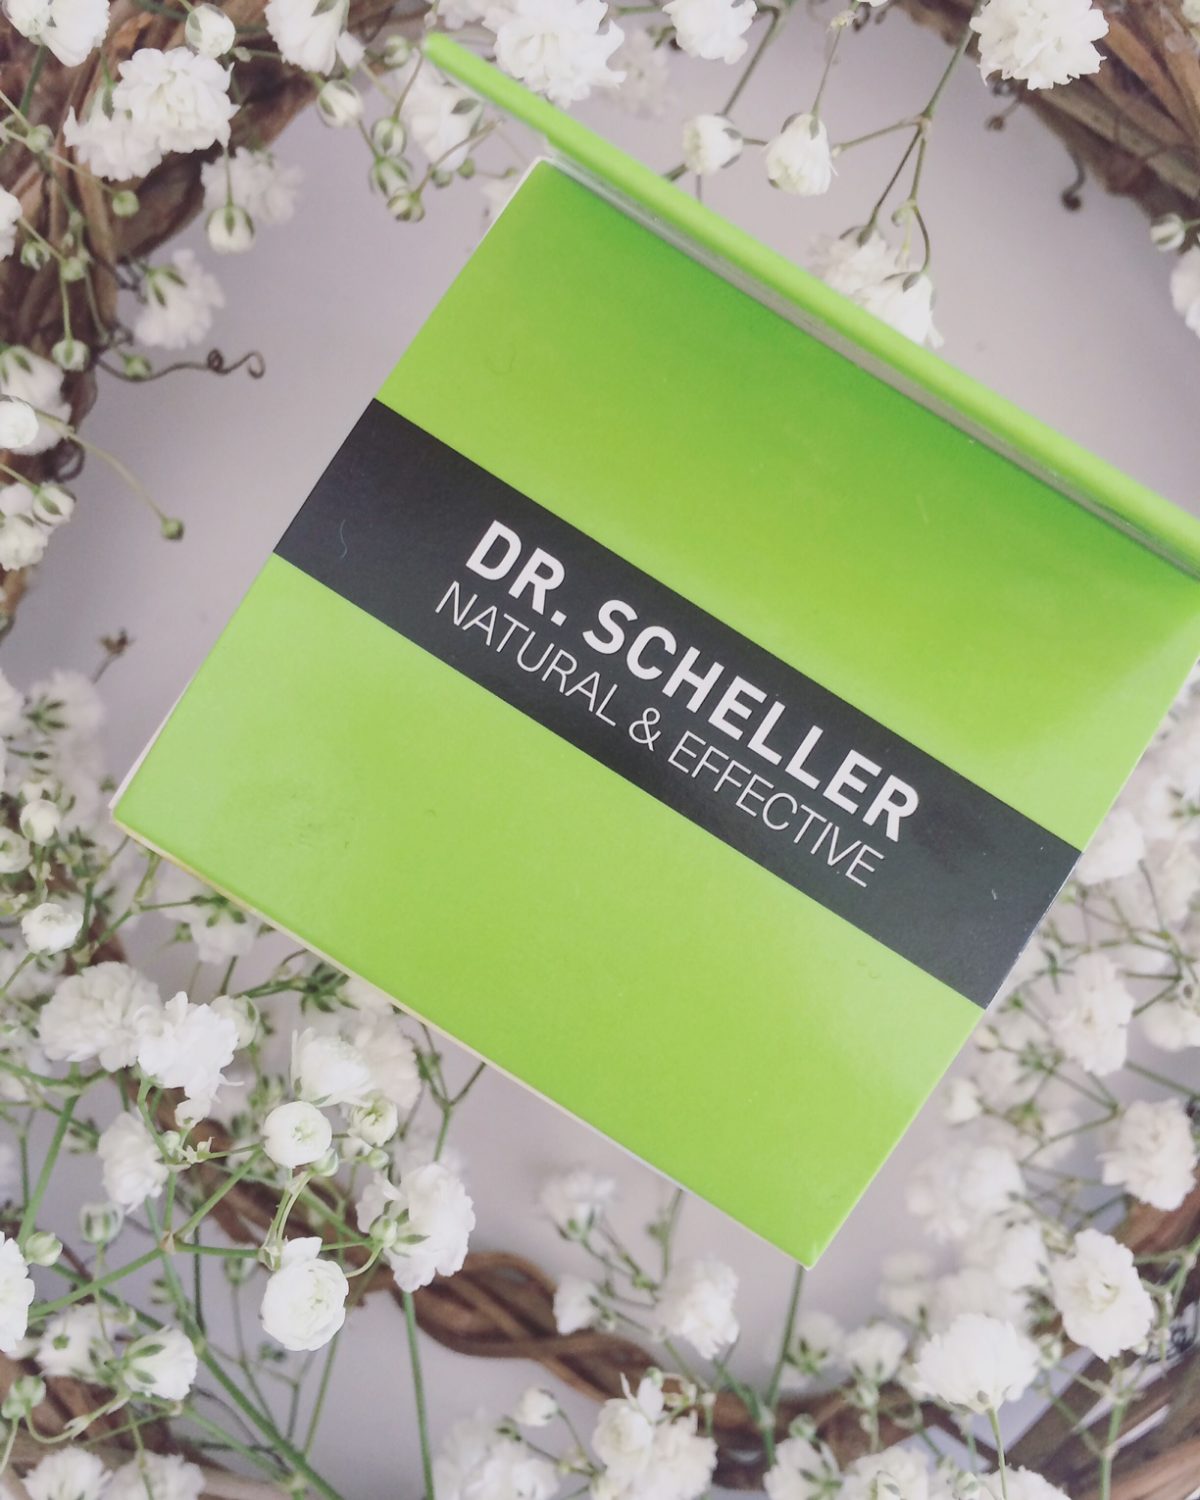 Dr. Scheller Argan & Amaranth Anti-wrinkle cream day SPF 10